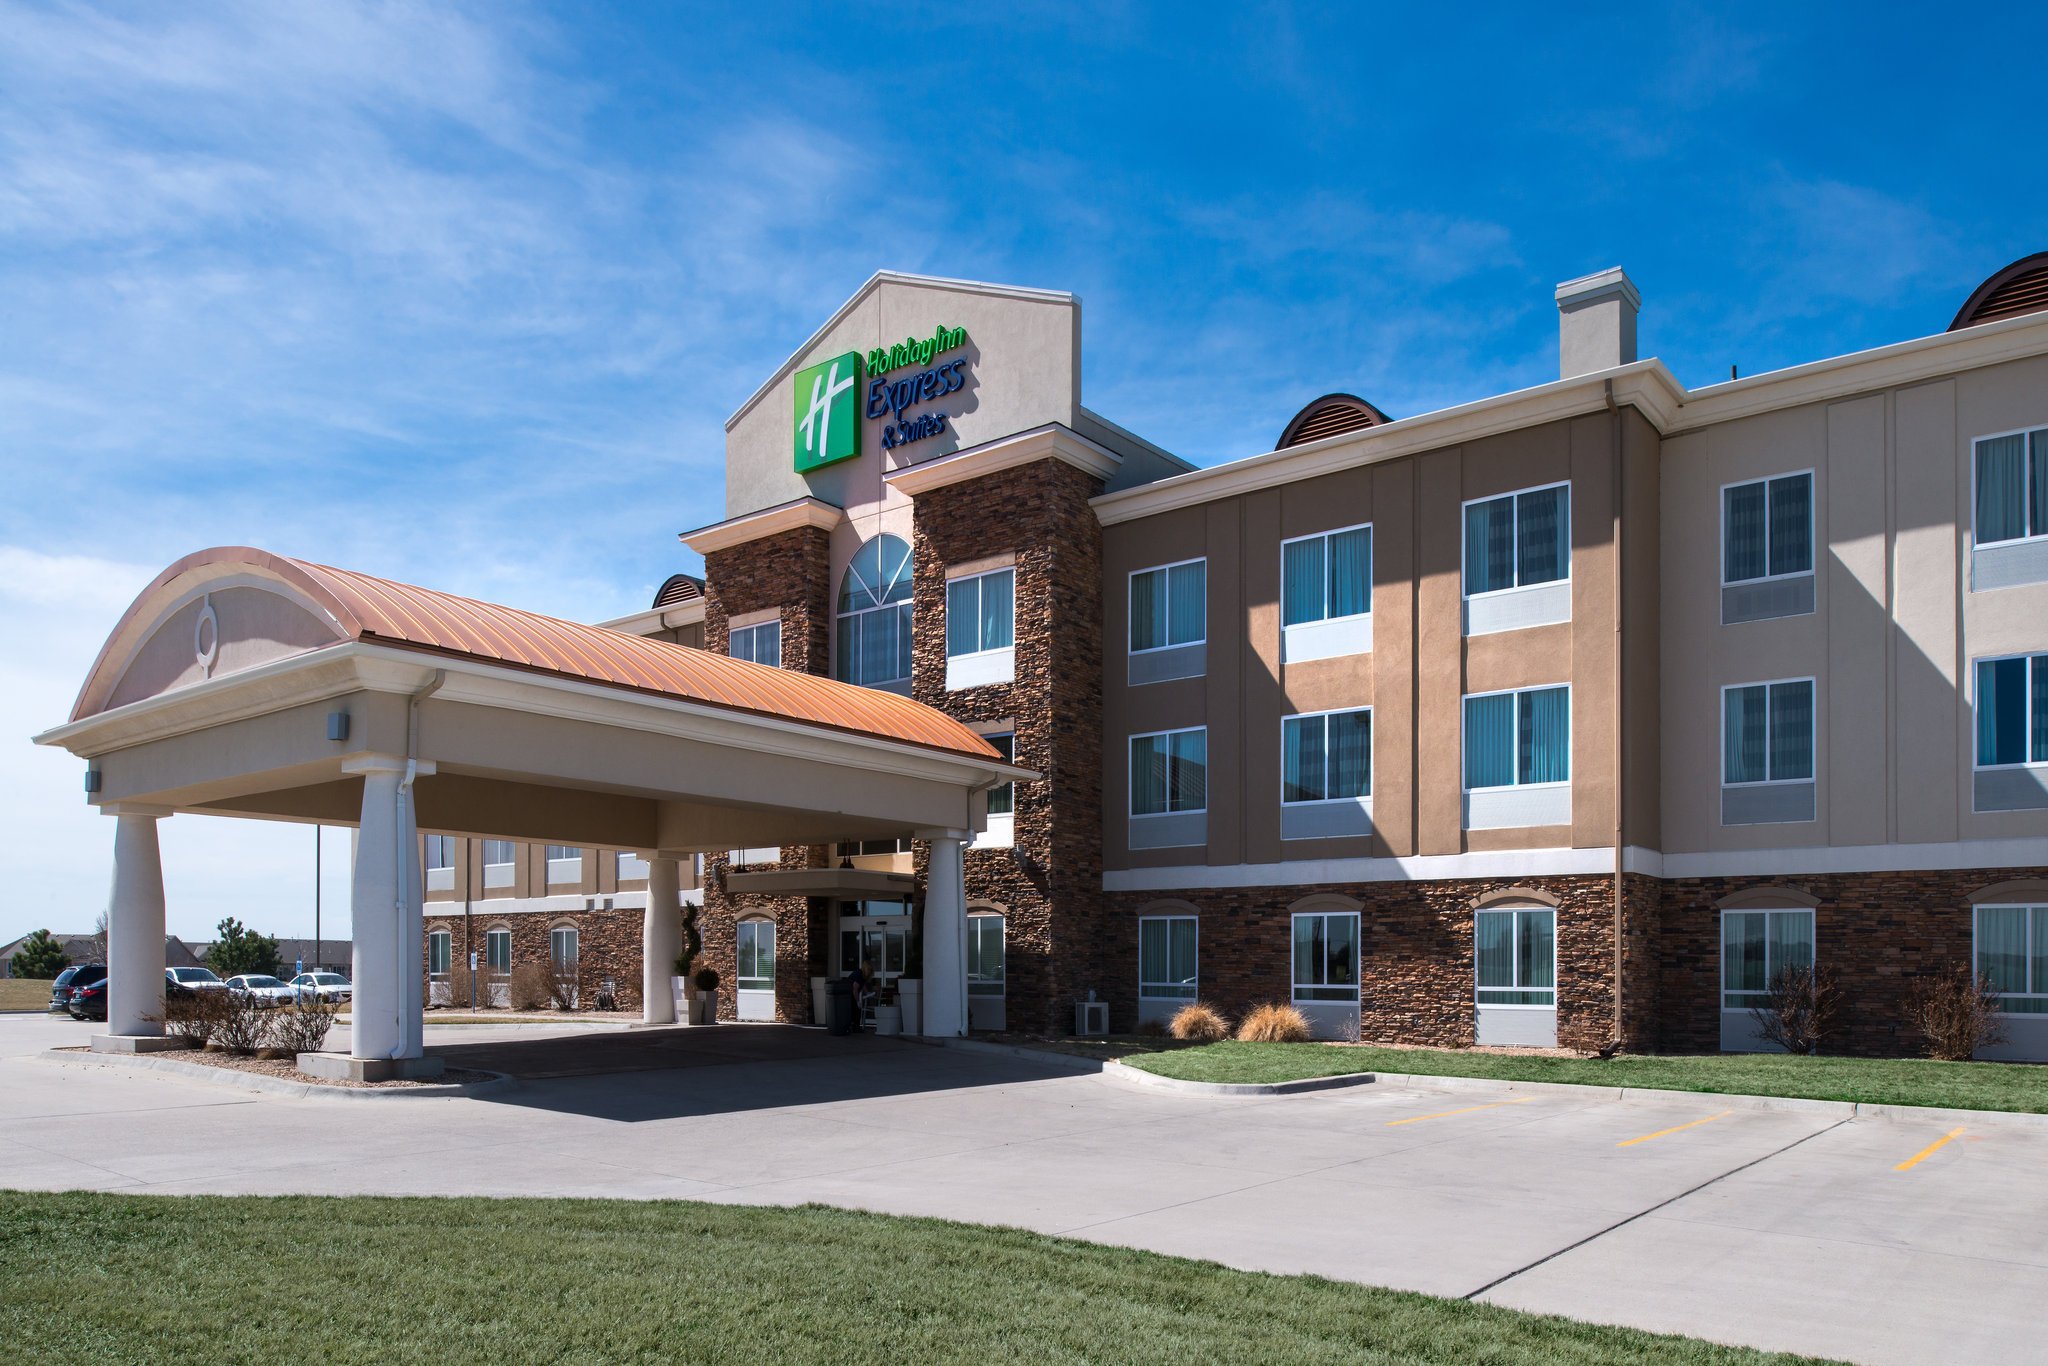 Photo of Holiday Inn Express Wichita Northwest Maize K-96, Maize, KS